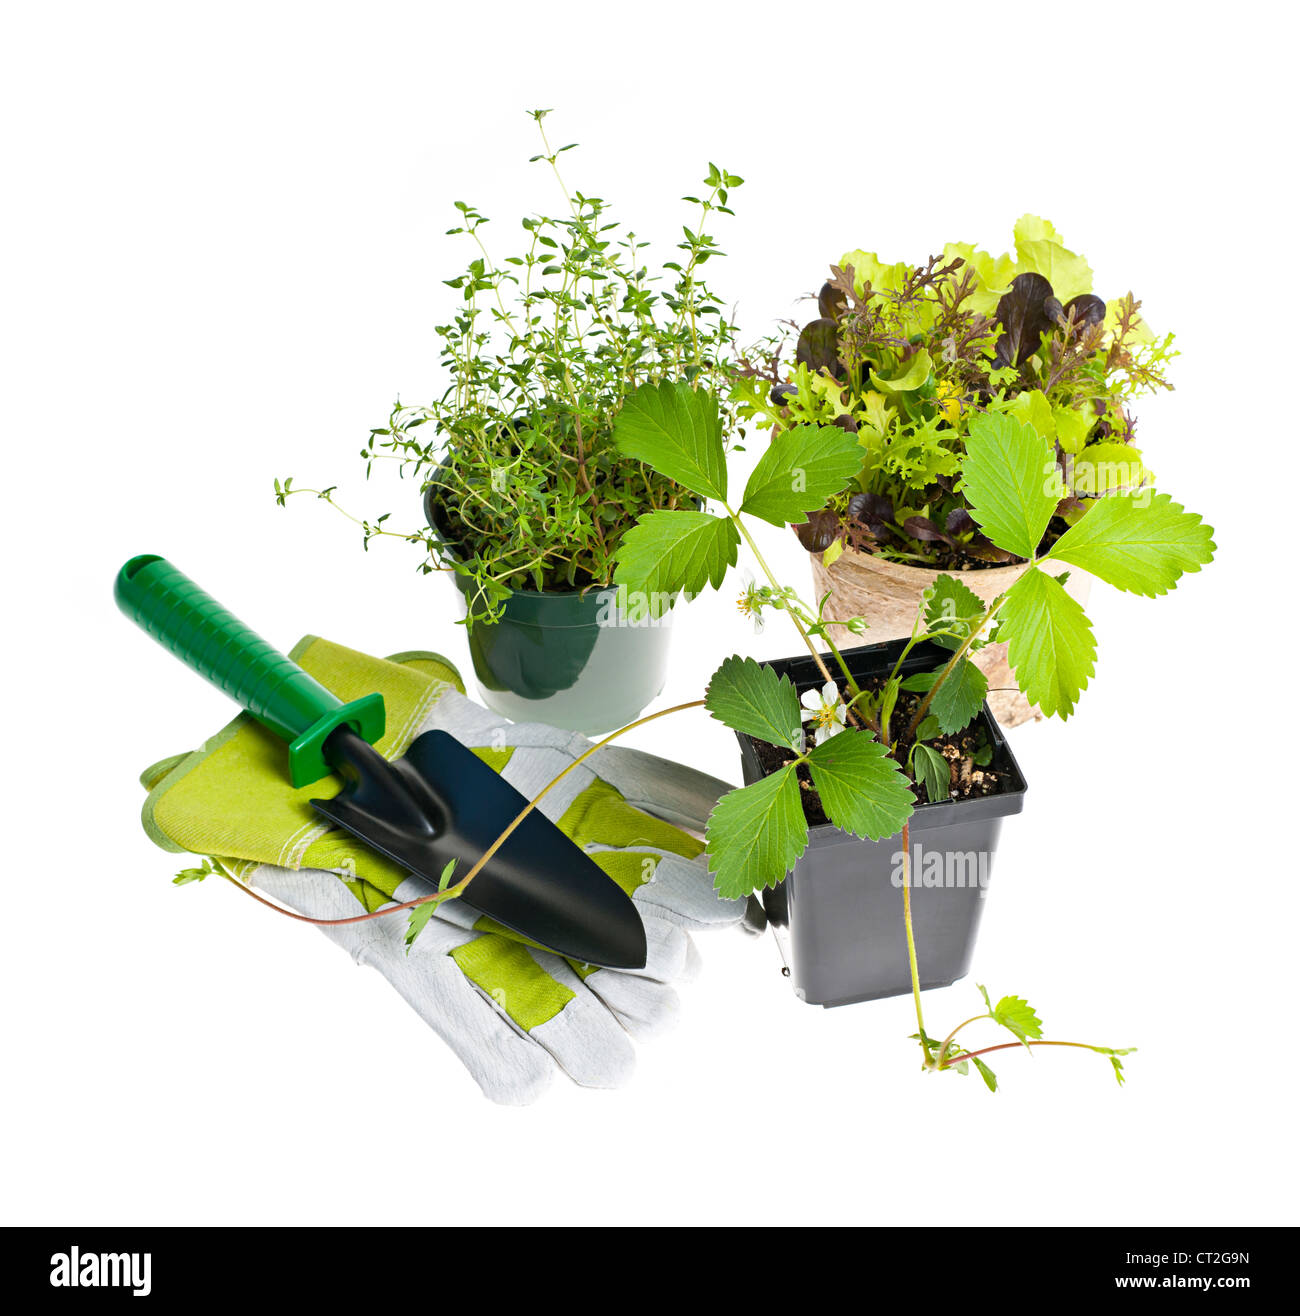 Plantes et plantules avec outils de jardinage isolated on white Banque D'Images